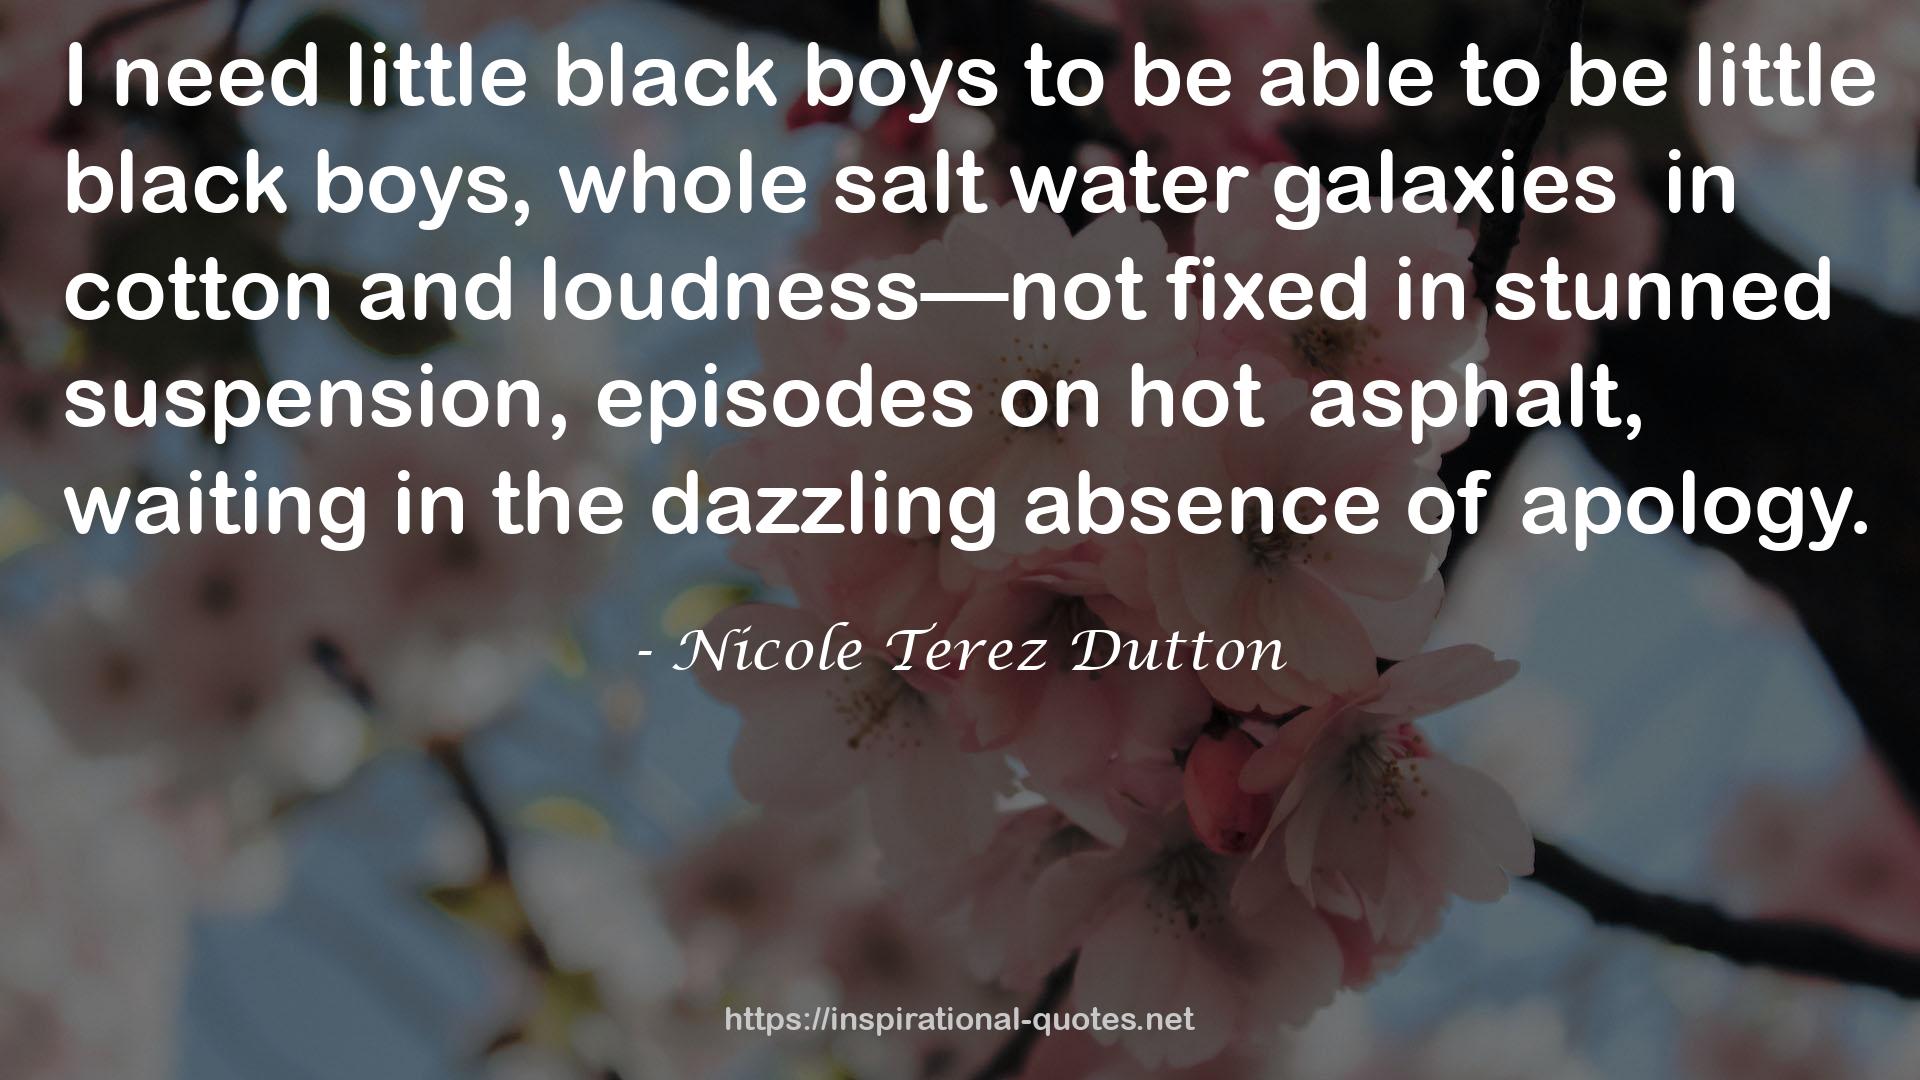 Nicole Terez Dutton QUOTES